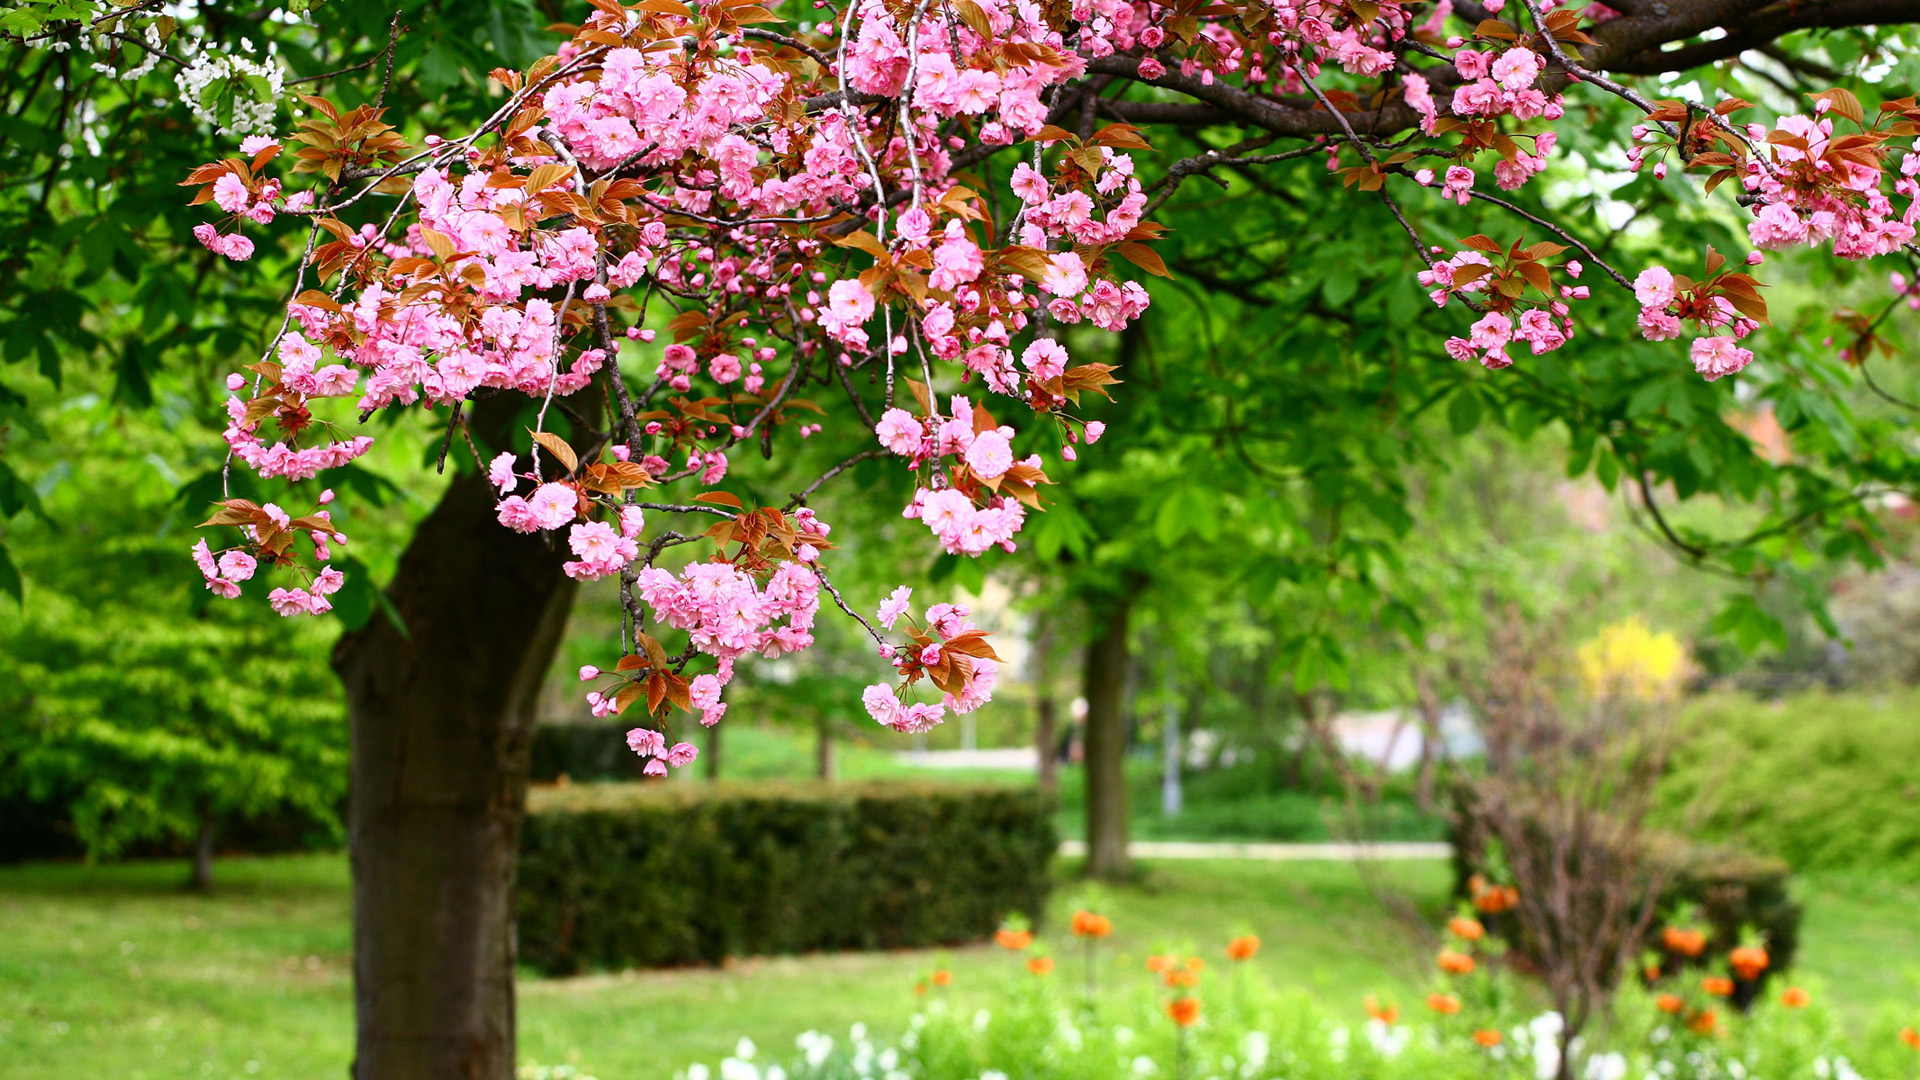 公园自然,粉红色的花朵,树林,绿色草地,风景桌面壁纸